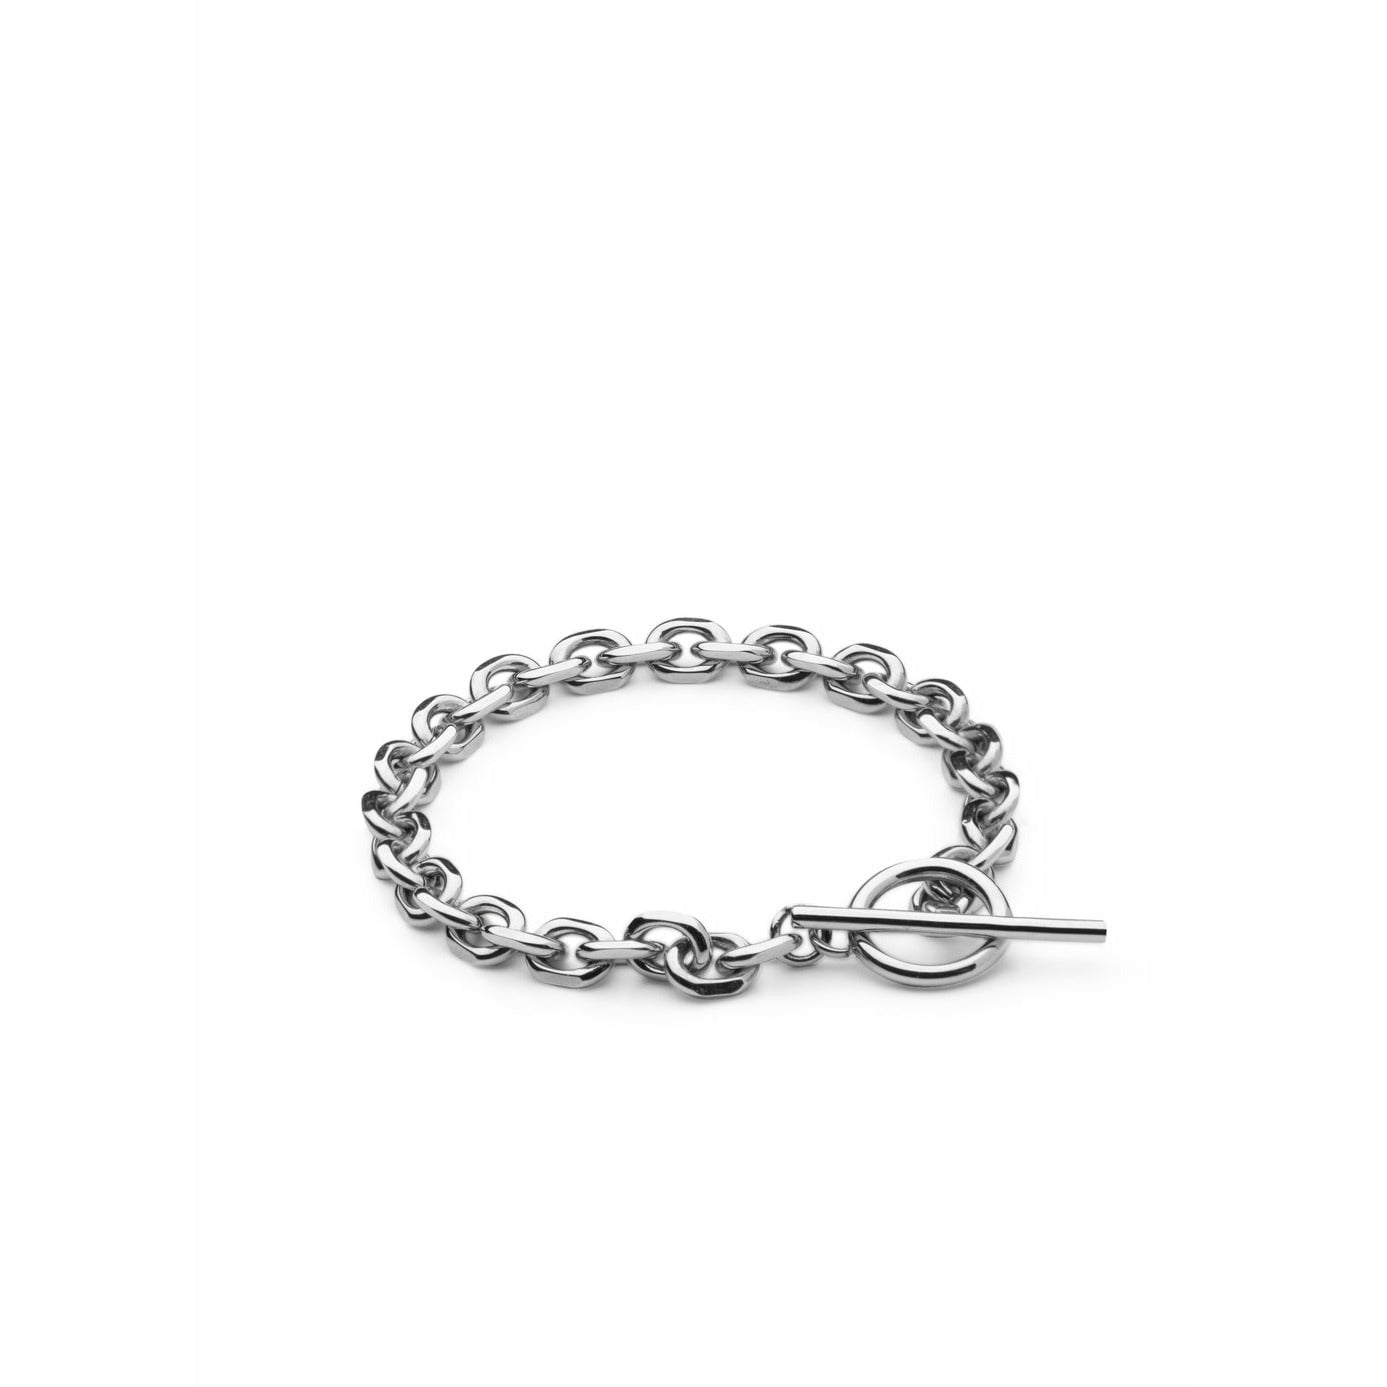 Skultuna Unité Chain Bracelet Small Polished Steel, ø14,5 Cm